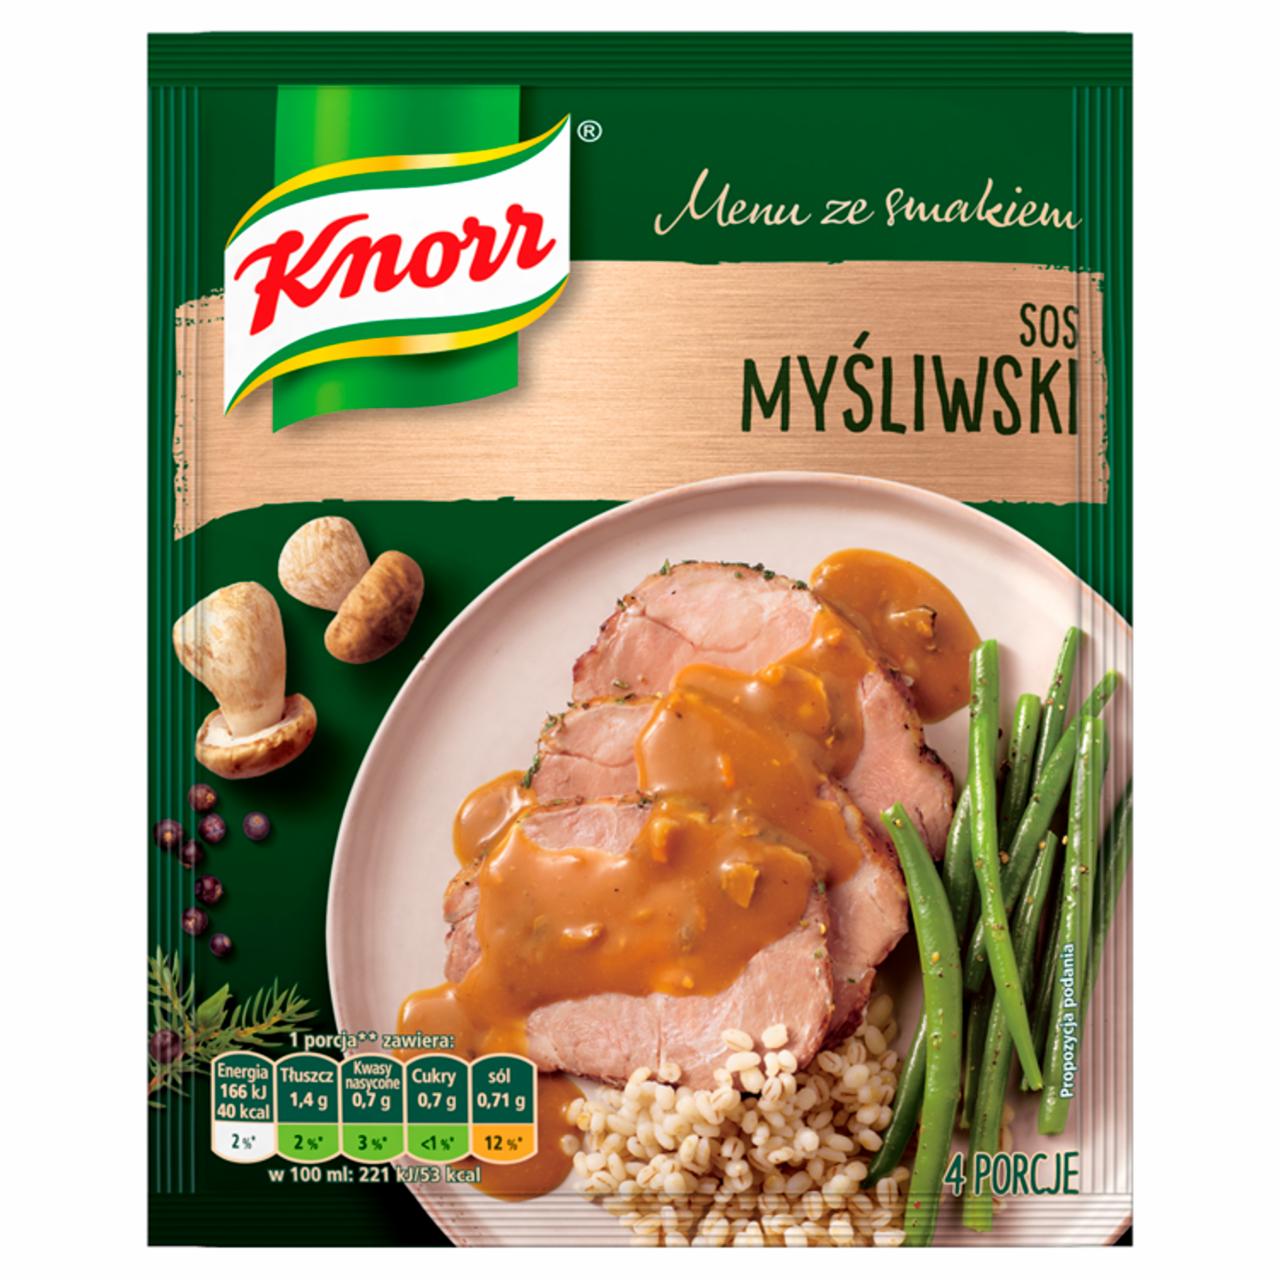 Zdjęcia - Knorr Menu ze smakiem Sos myśliwski 37 g